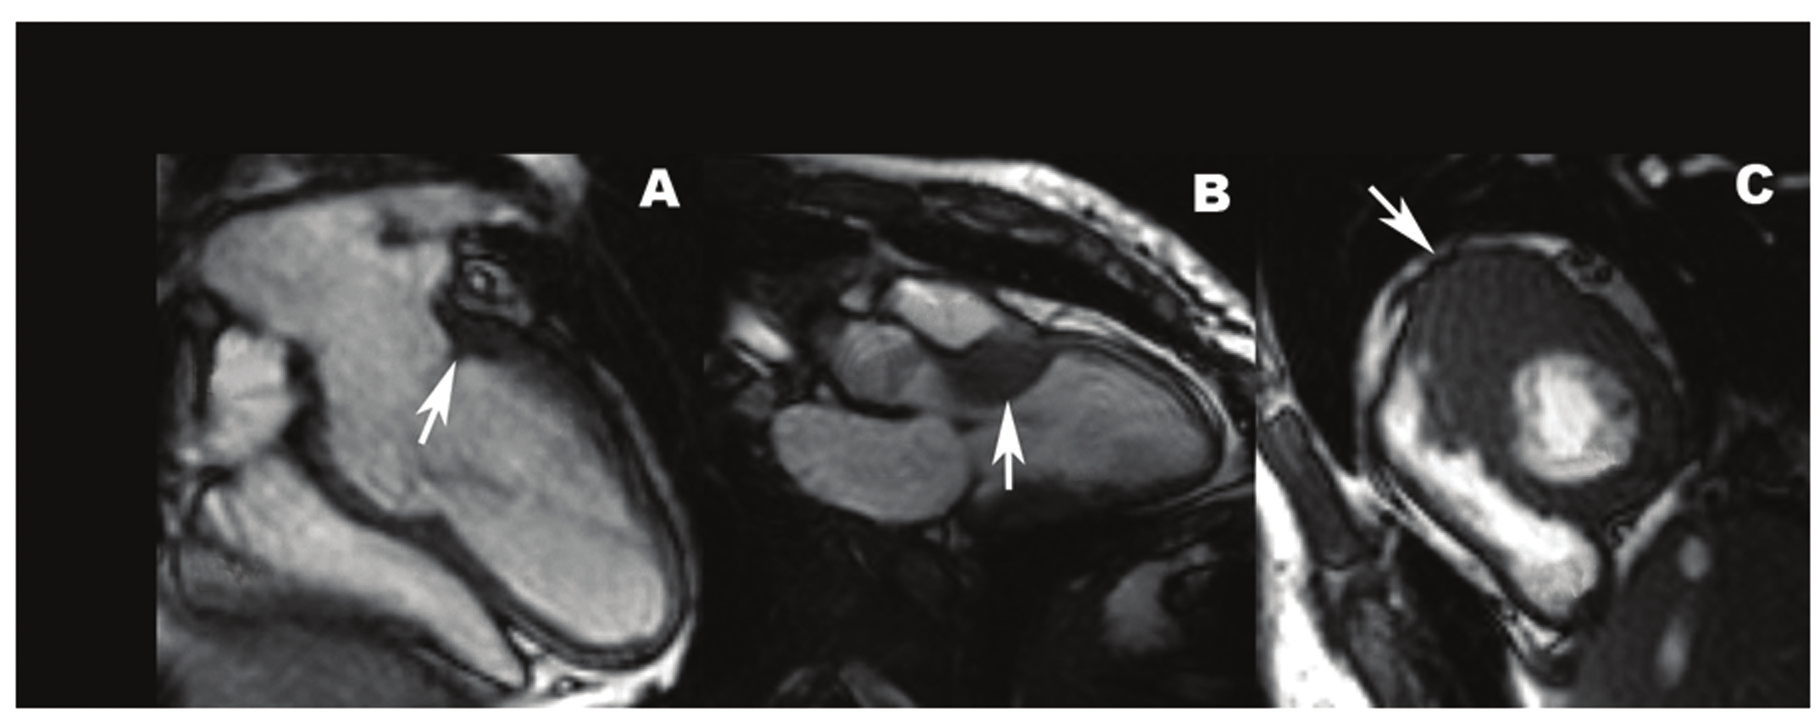 Ao - Aorta; - átrio esquerdo; - ventrículo esquerdo; VS - via de saída do ventrículo esquerdo; - átrio direito; - ventrículo direito. Ao Fig. 4 - Exemplo de paciente com cardiomiopatia hipertrófica.